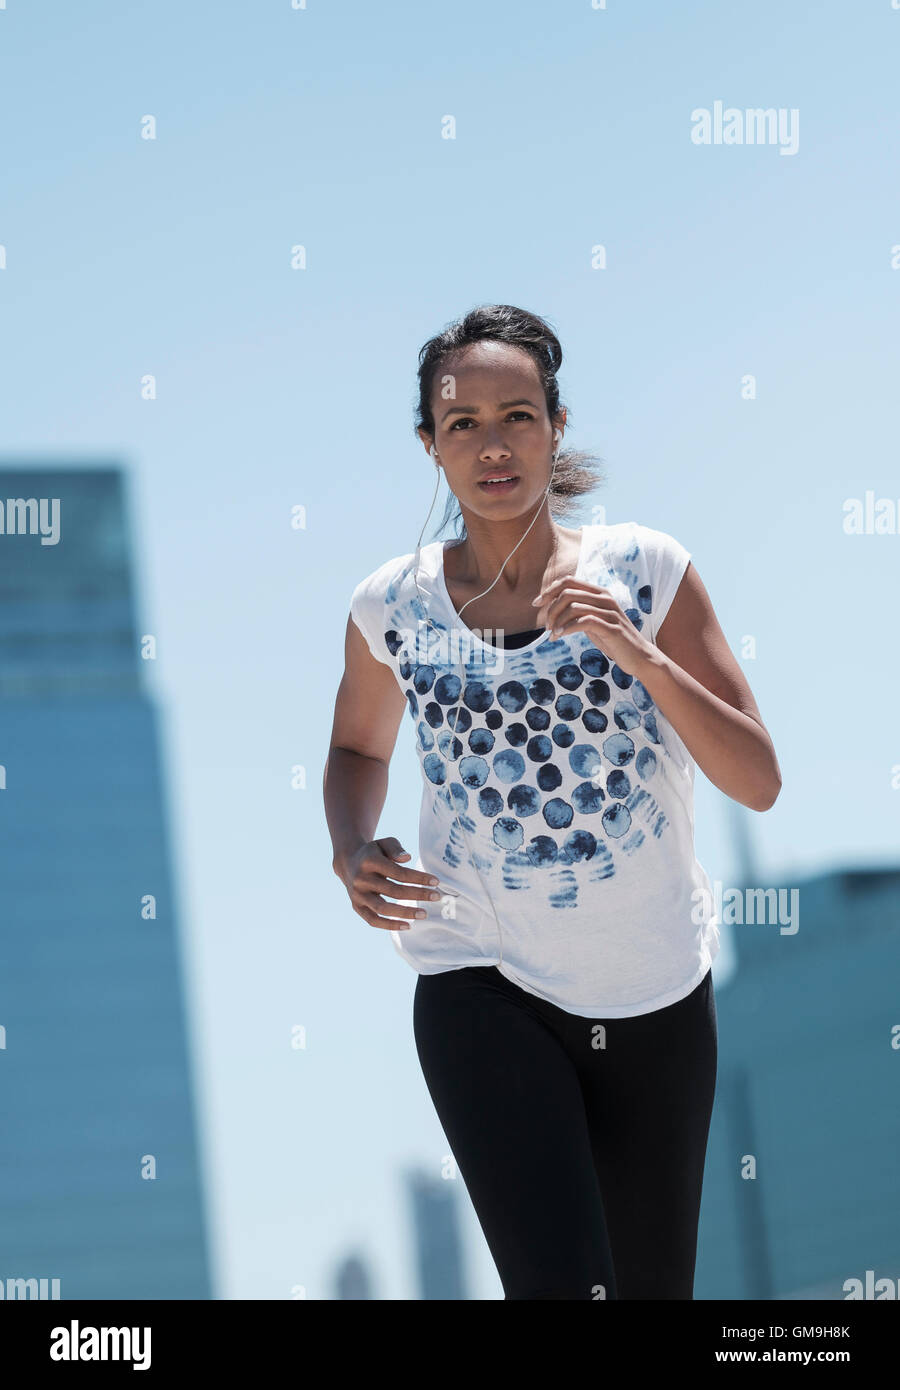 Vue avant du Mid adult woman jogging in city Banque D'Images